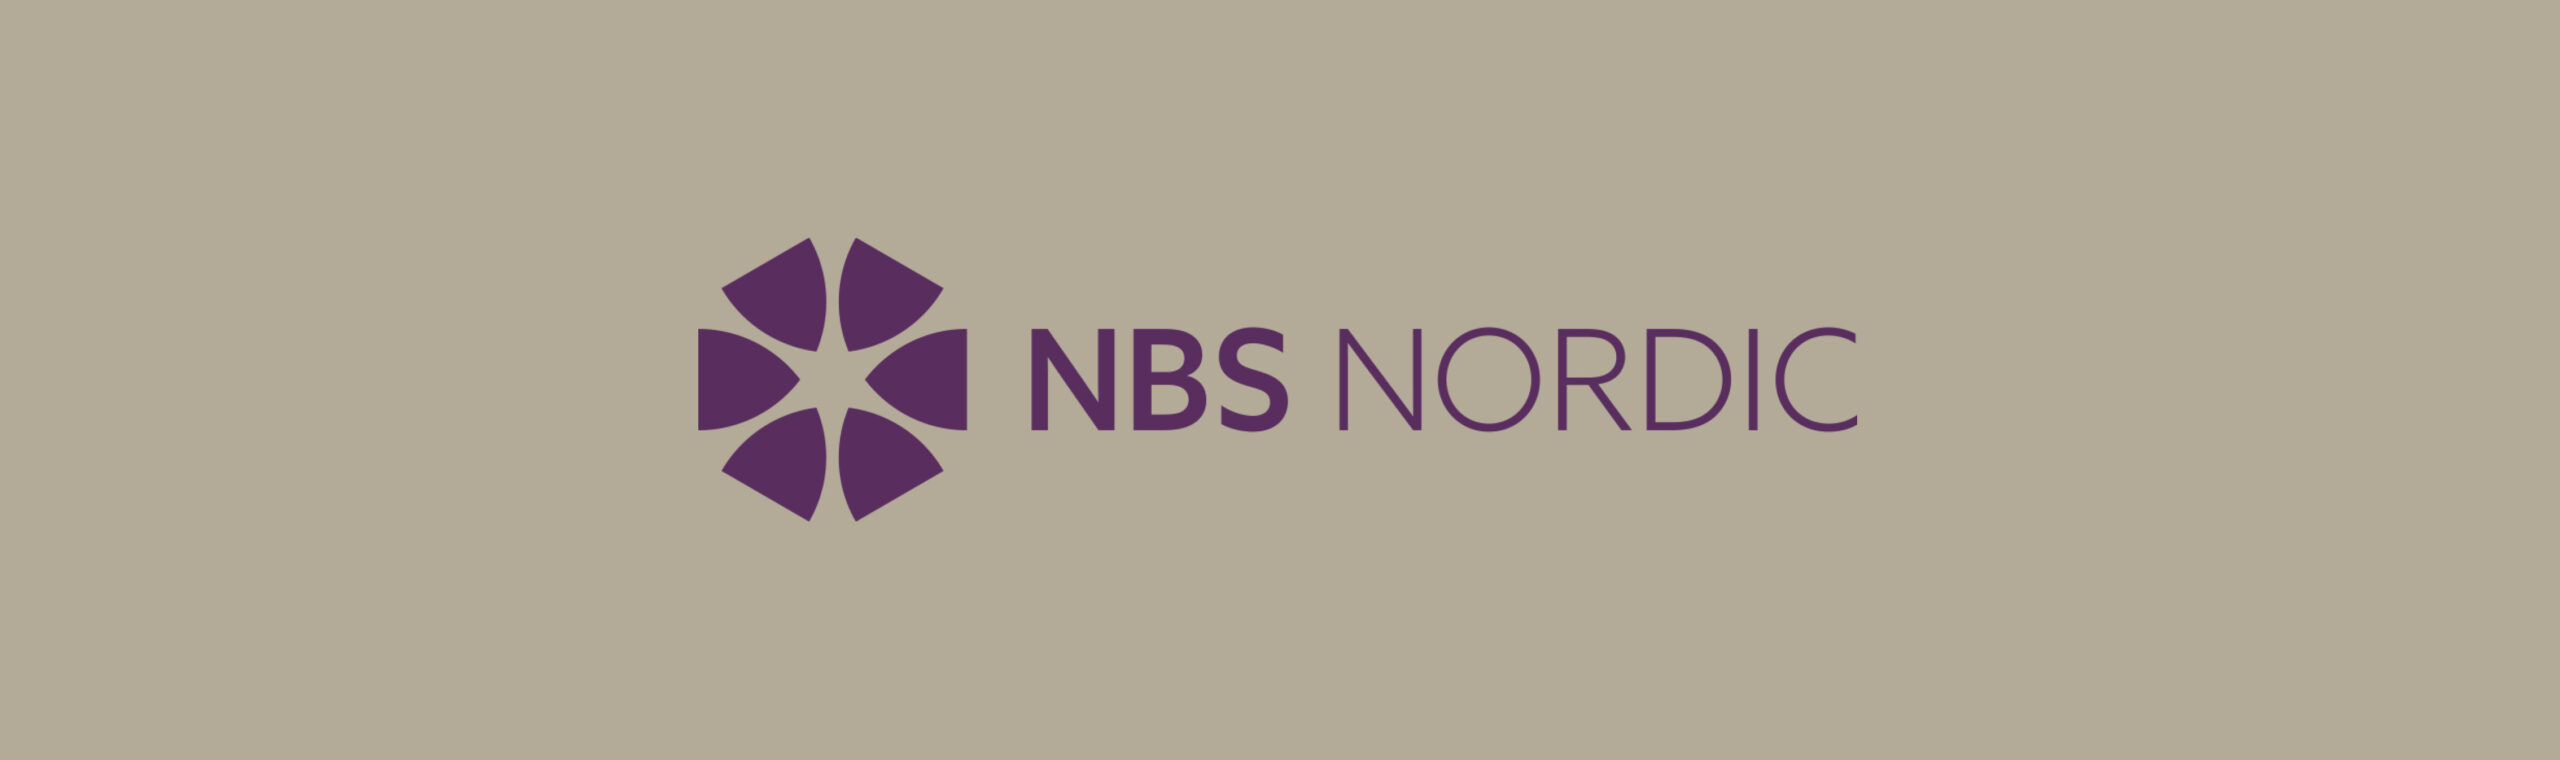 Hørning Parket engagerer sig med NBS Nordic